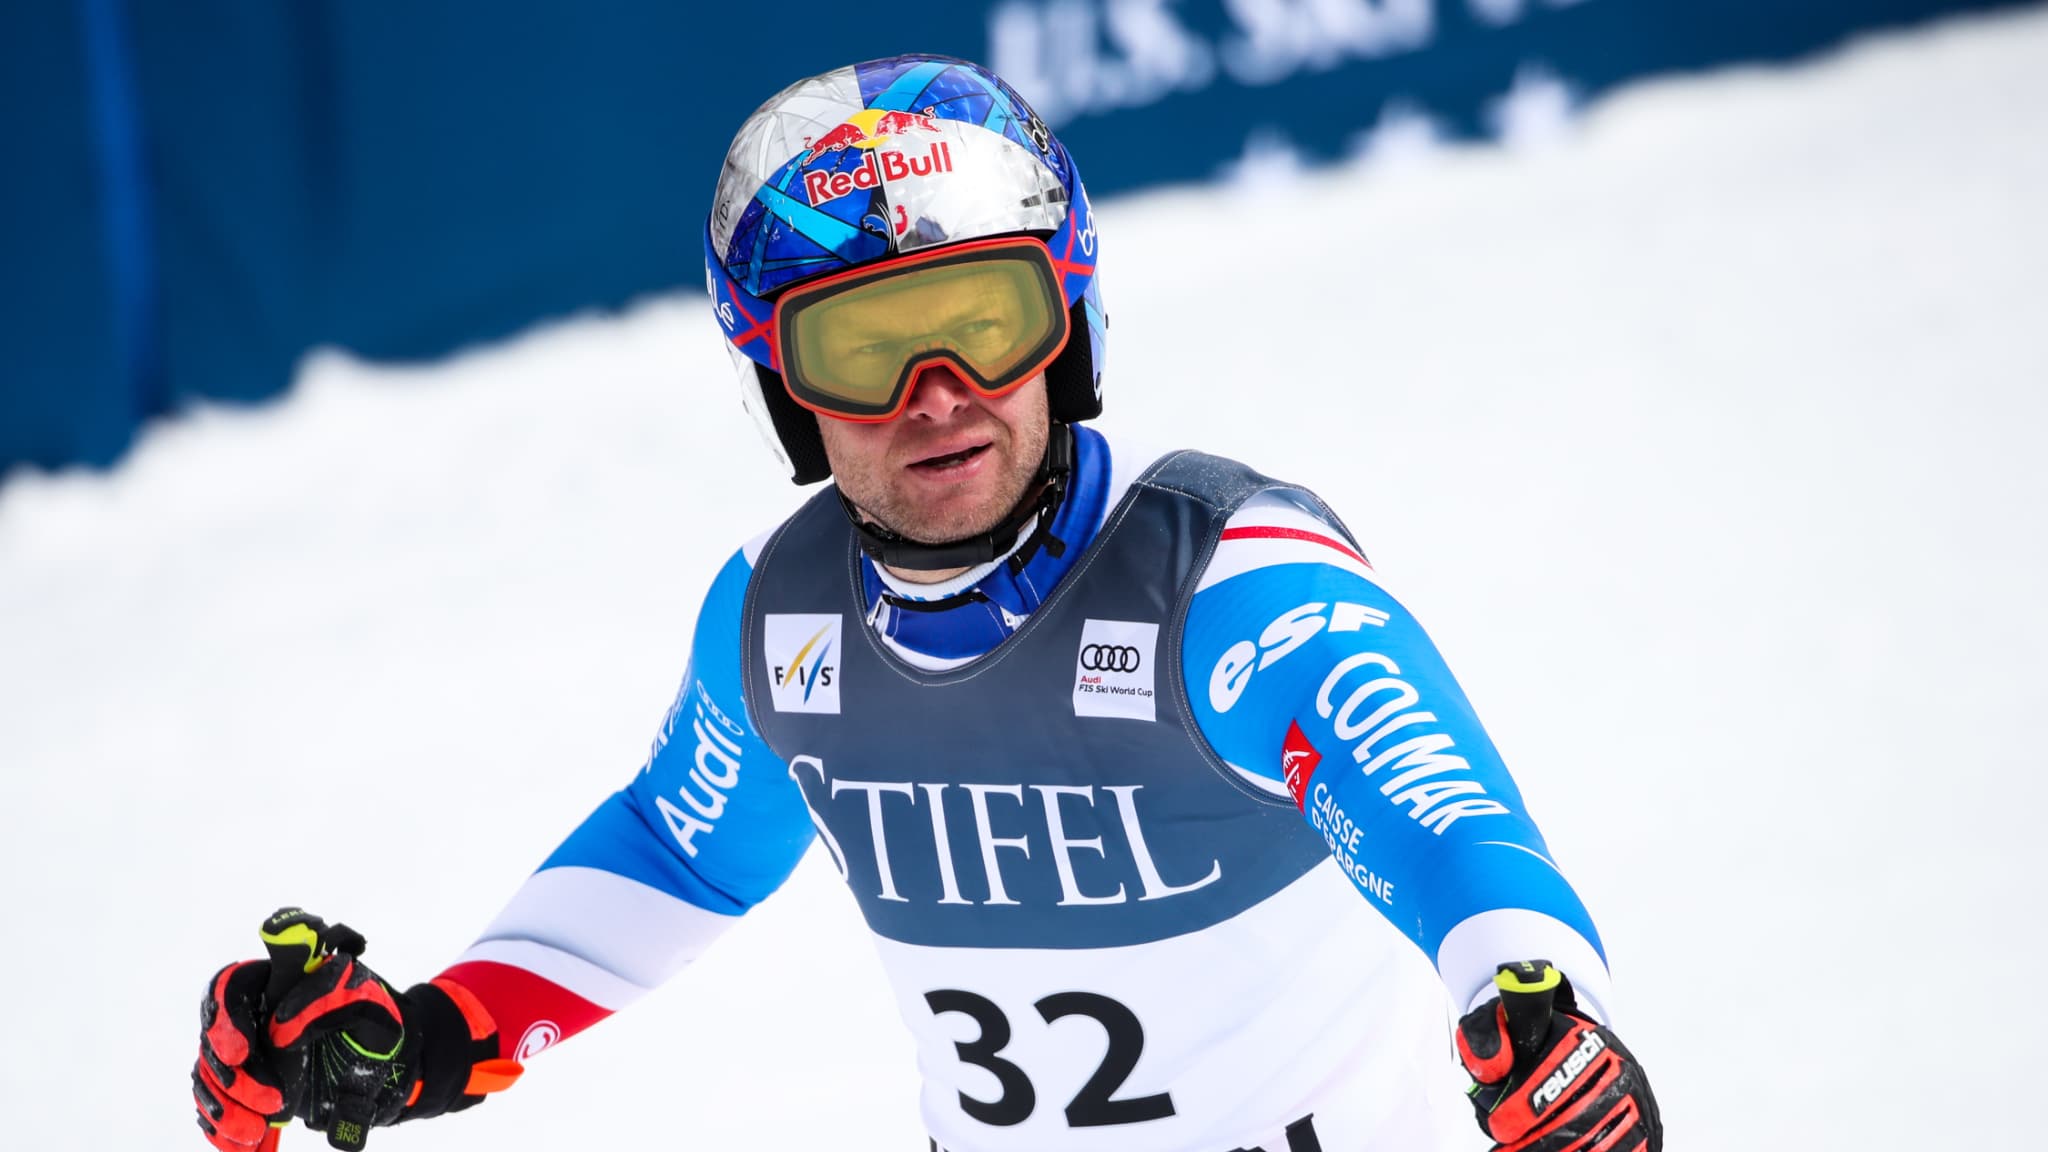 Con sei gare su sette annullate, la stagione dello sci alpino maschile è stata interrotta